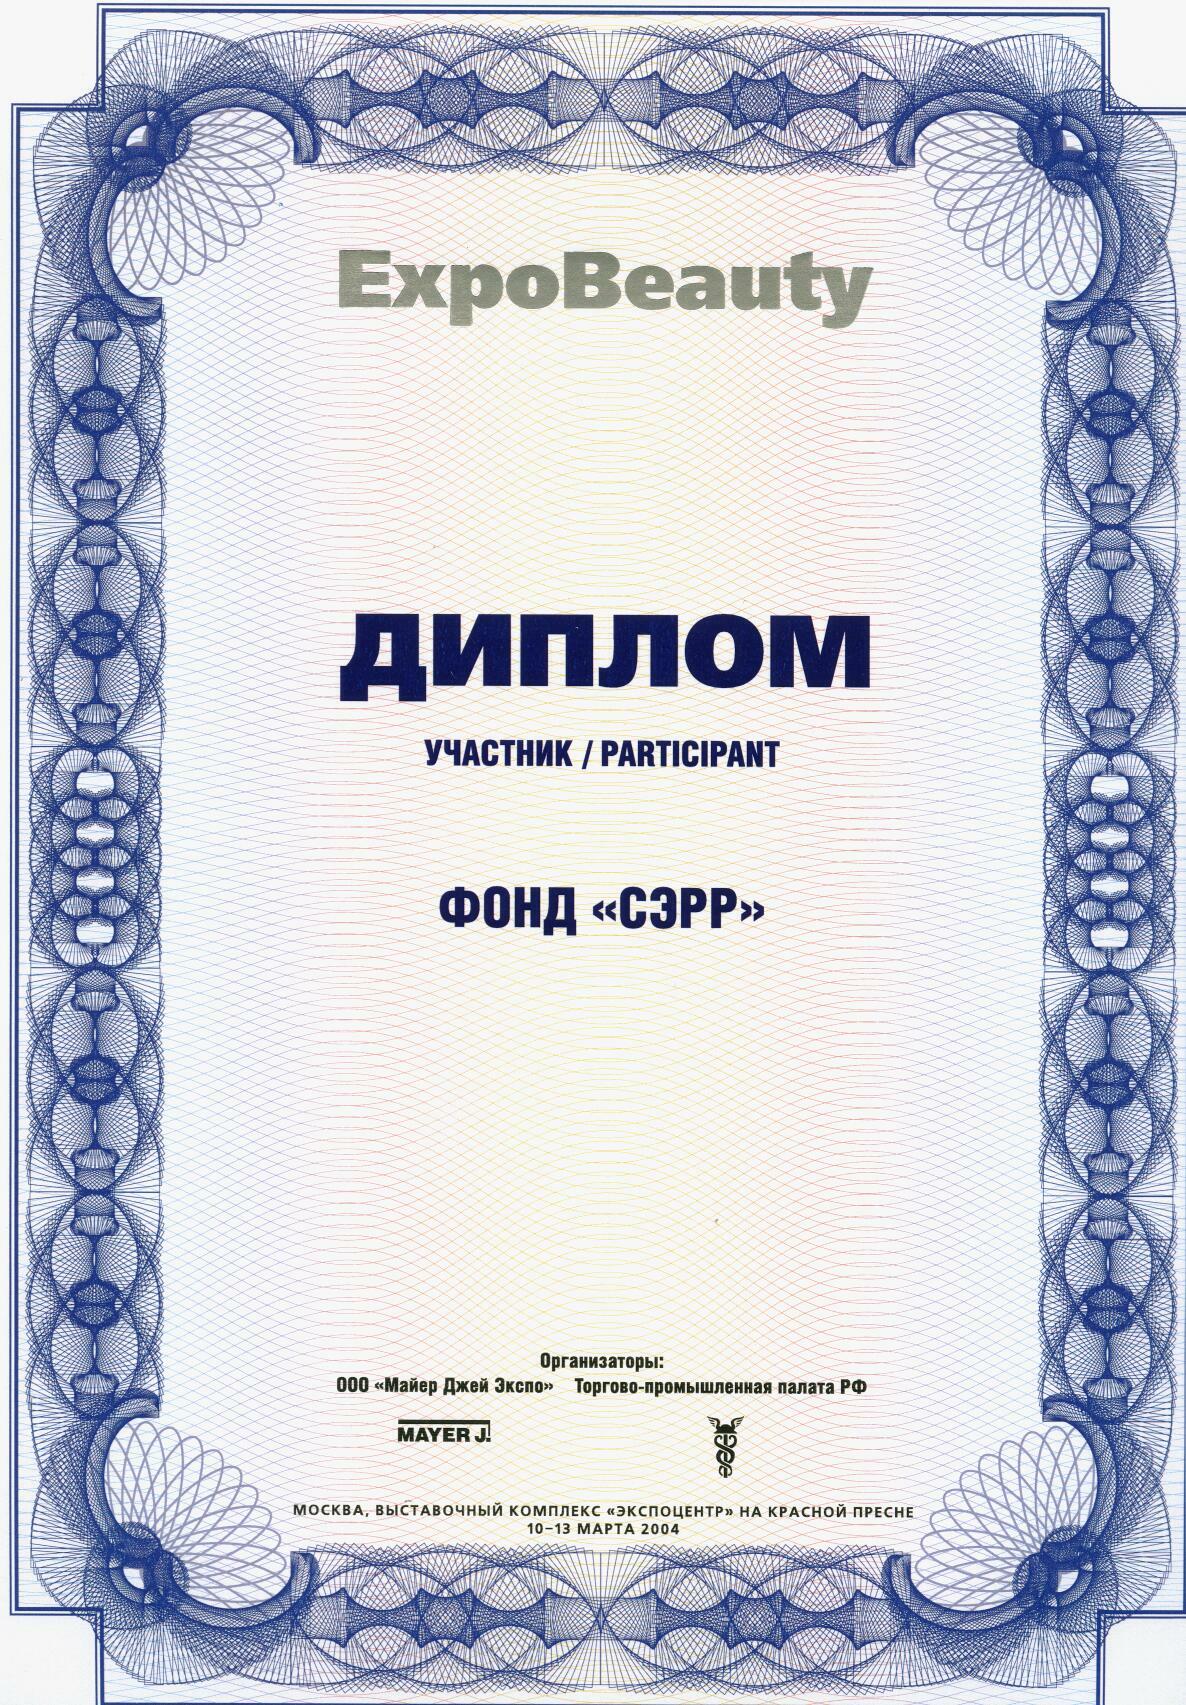 Диплом участника выставки EXPObeauty 2004